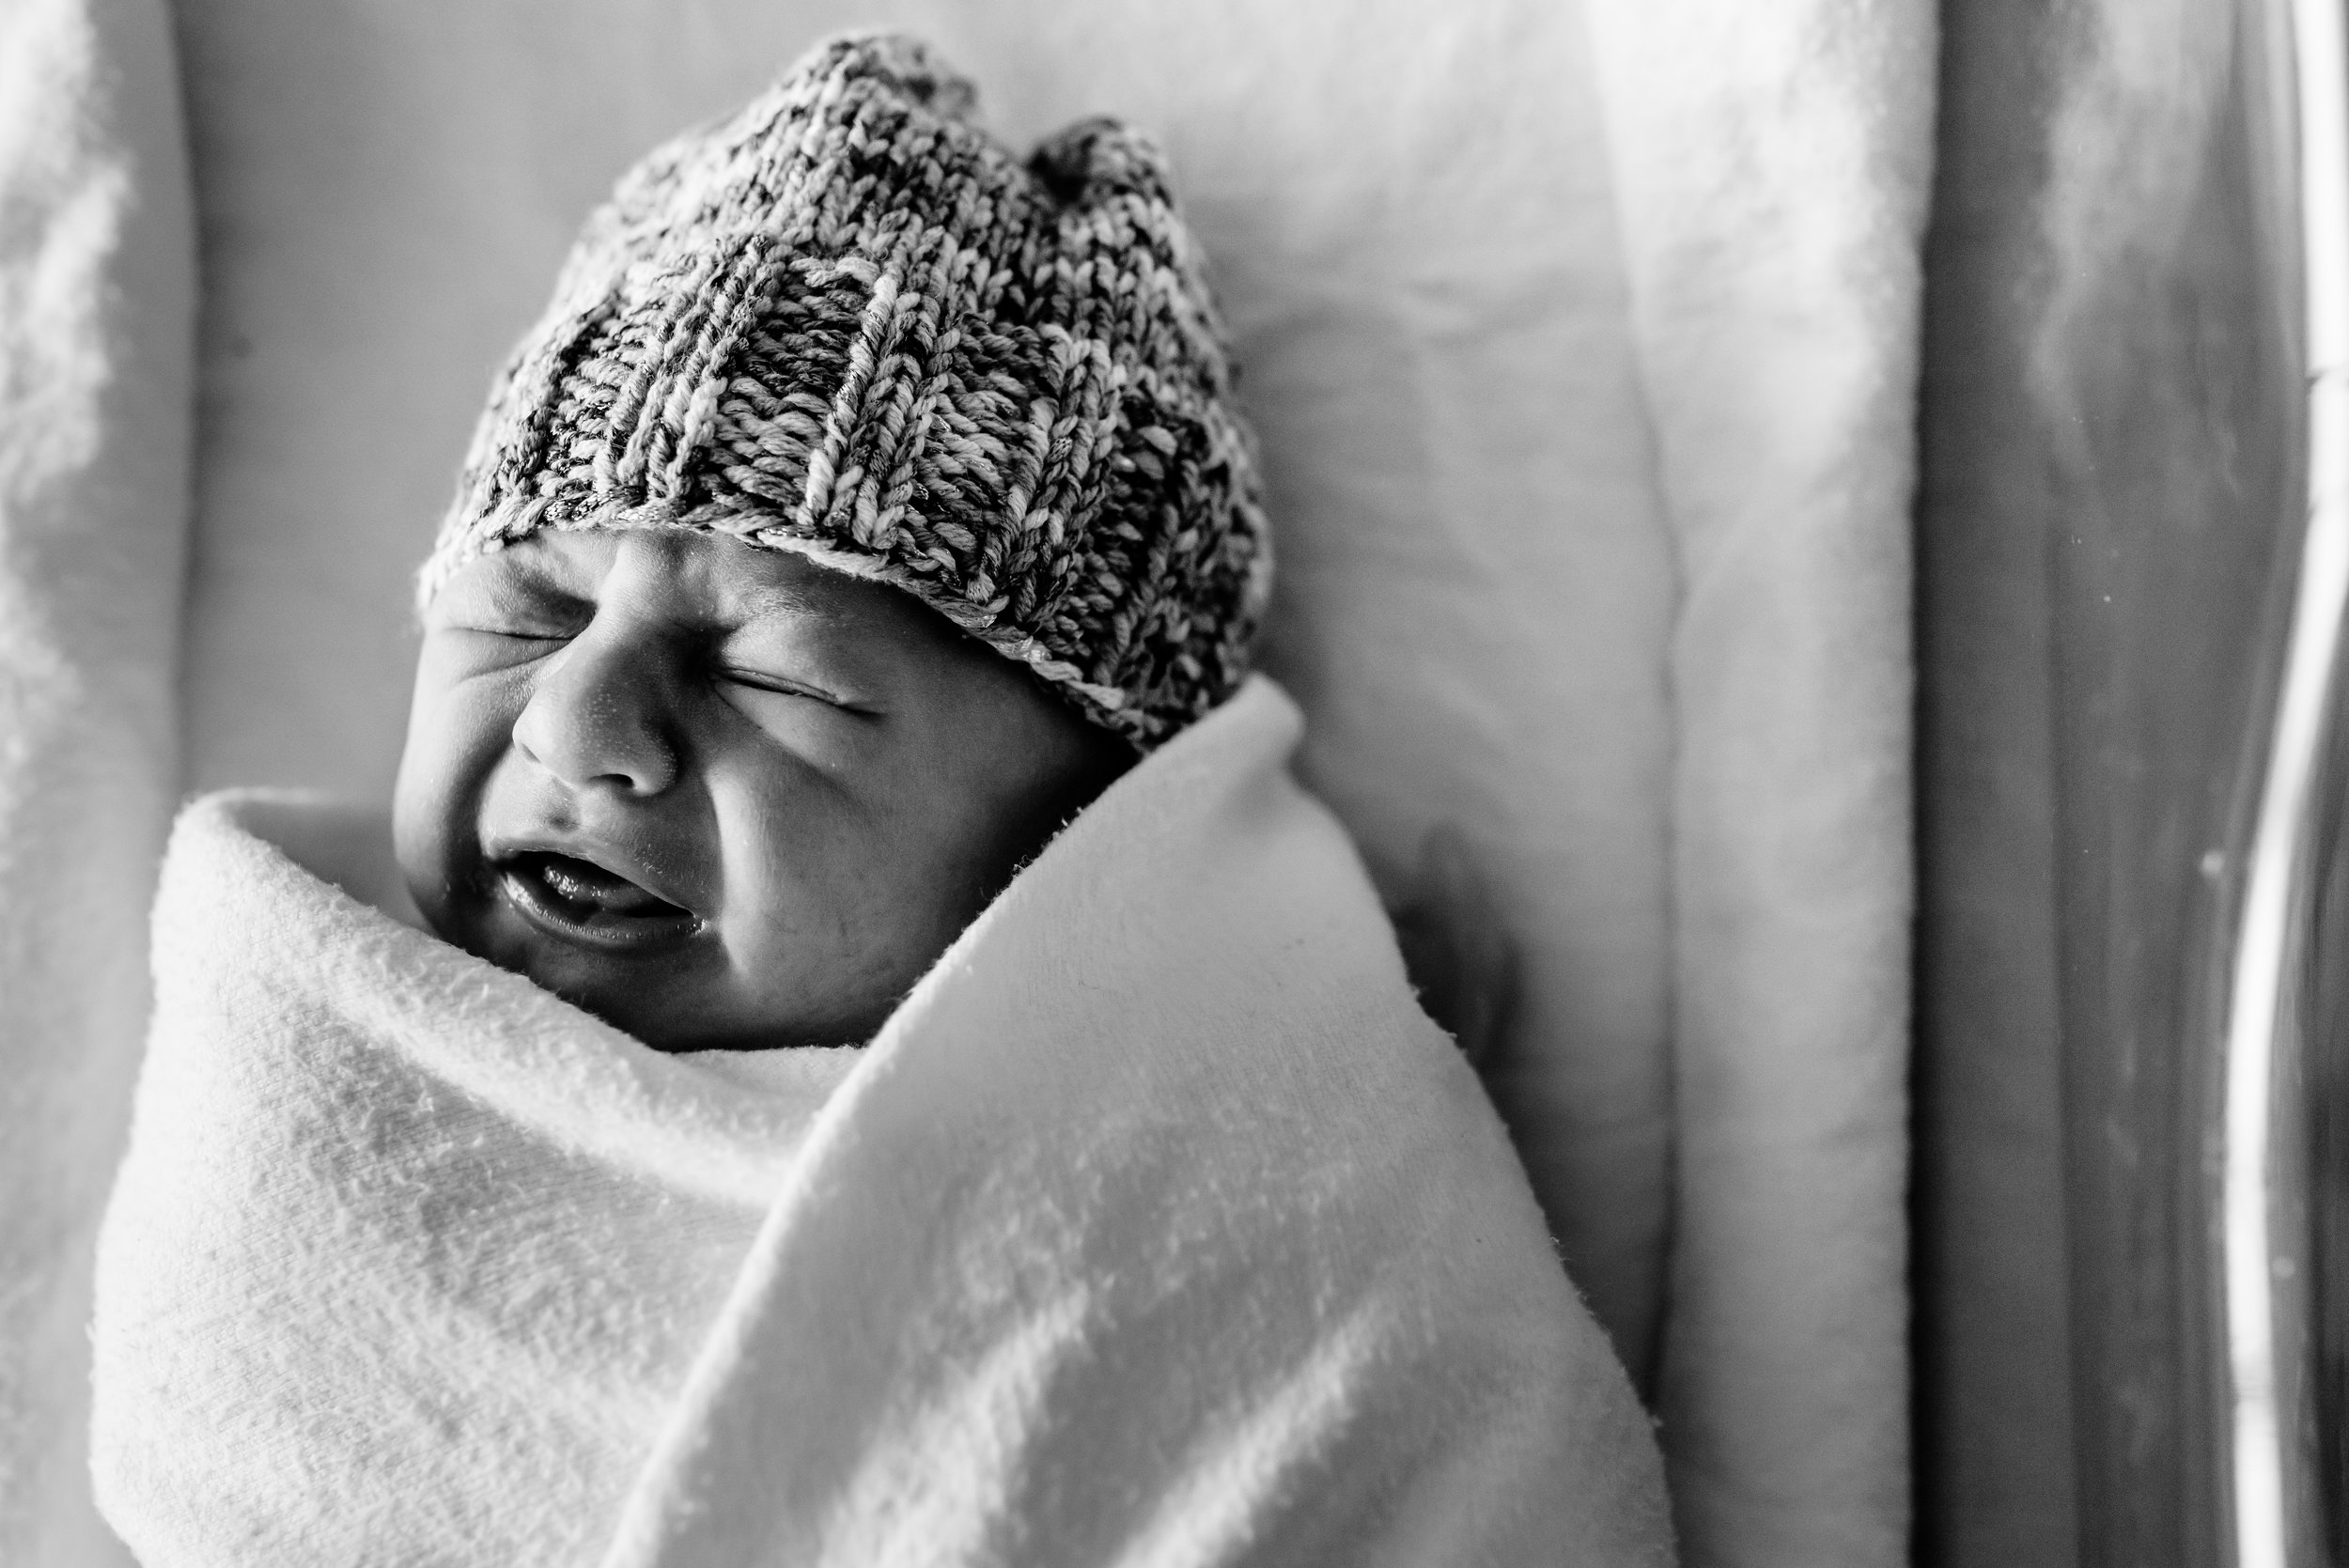 Newborn crying in hospital bassinet